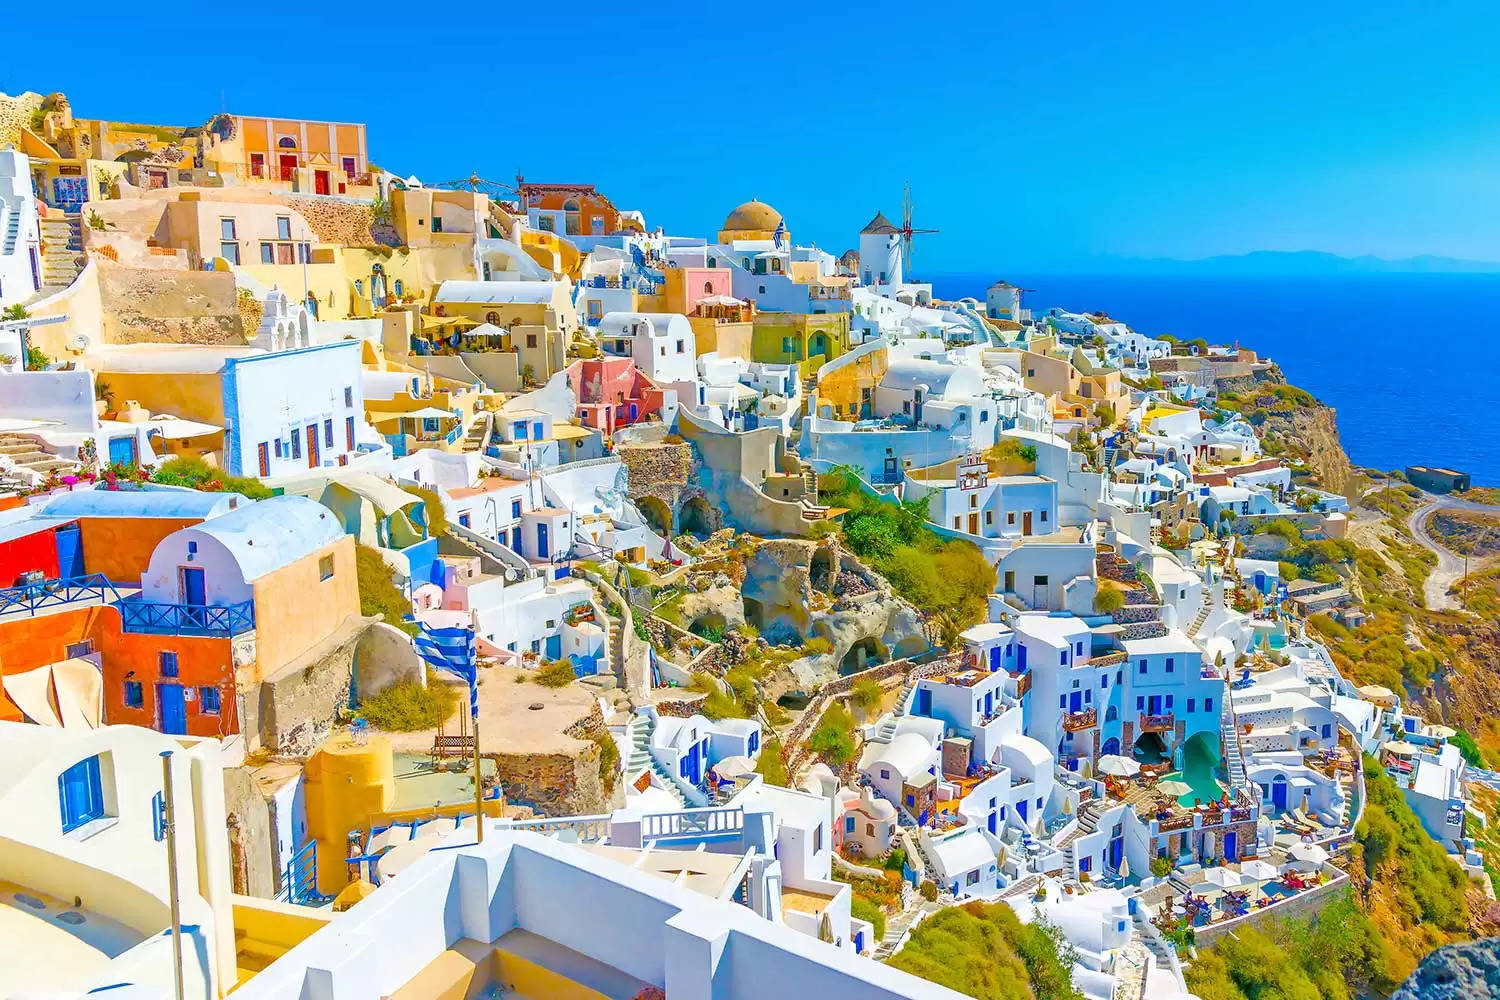 ग्रीस जाने का बना रहे है प्लान तो ये टिप्स आ सकती है आपके काम